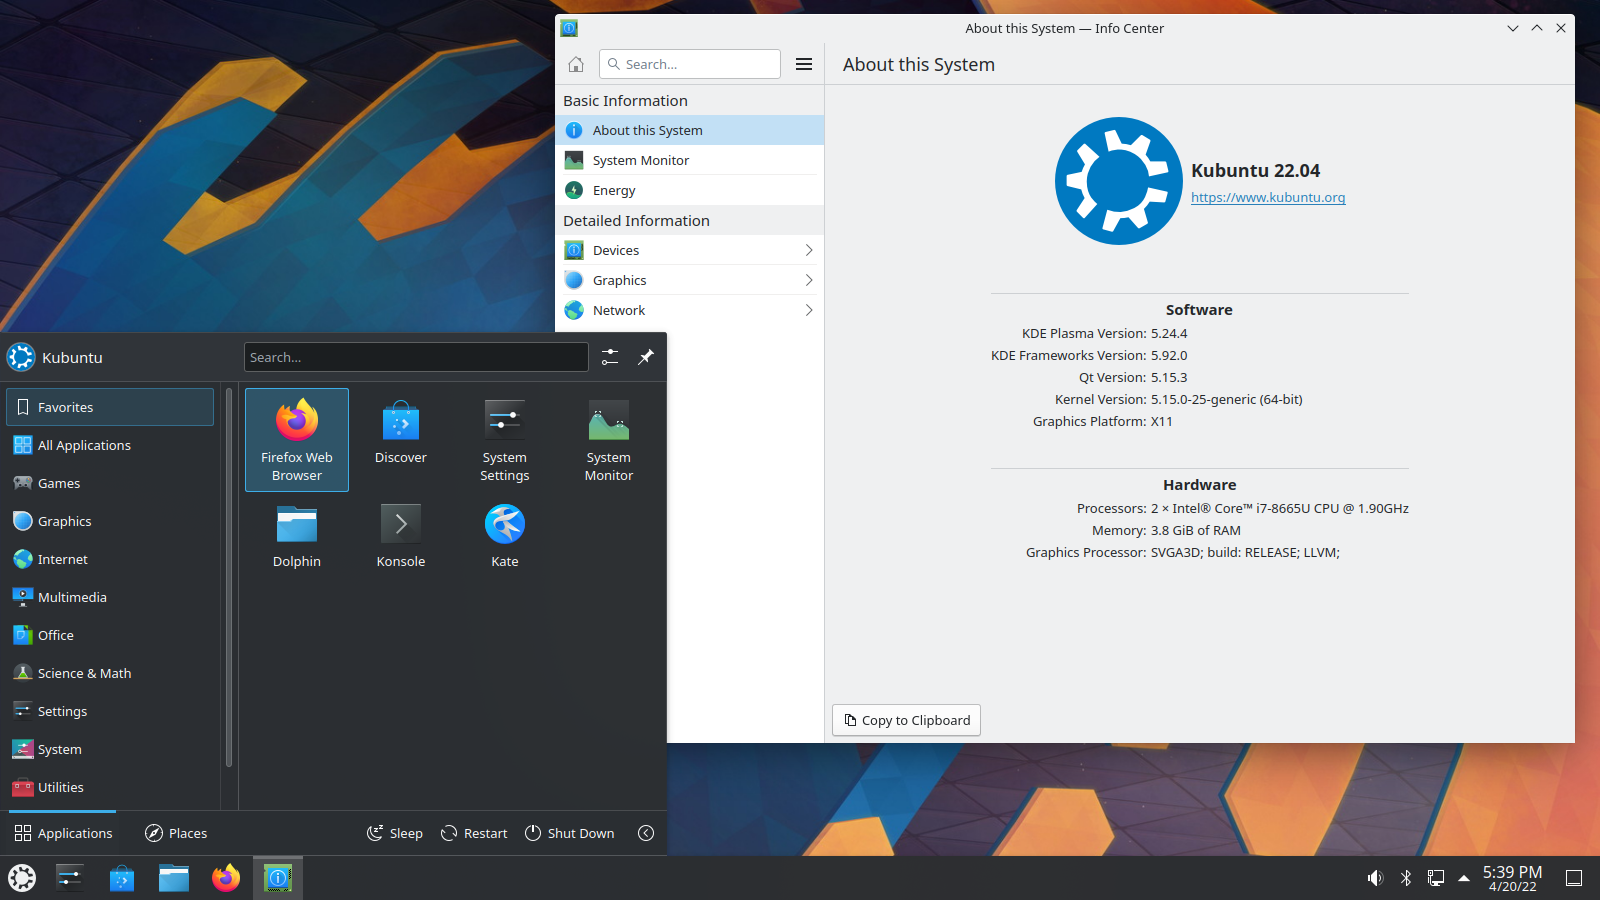 Kubuntu 22.04 desktop wallpaper